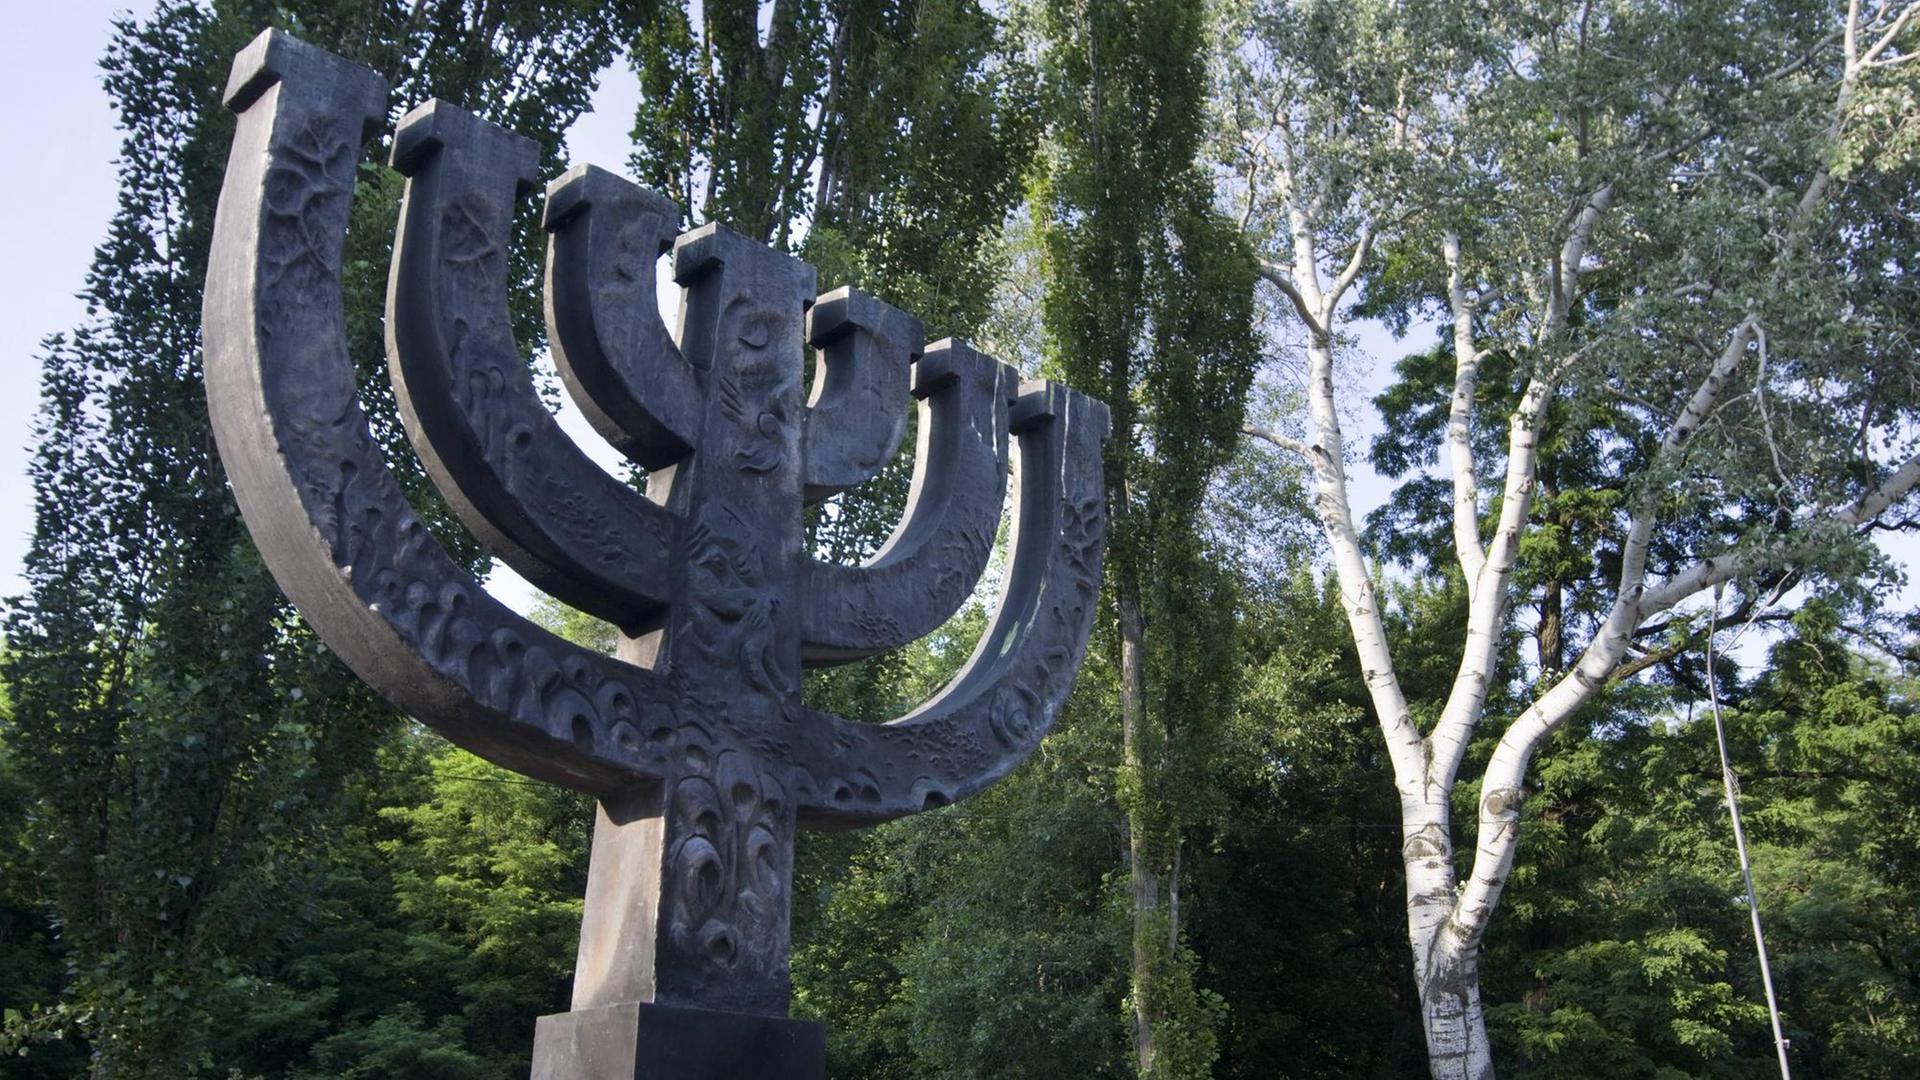 Nach dem Zerfall der UdSSR errichteten Jüdische Organisationen ein großes Menora-Denkmal zwischen den Bäumen der Parkanlage.